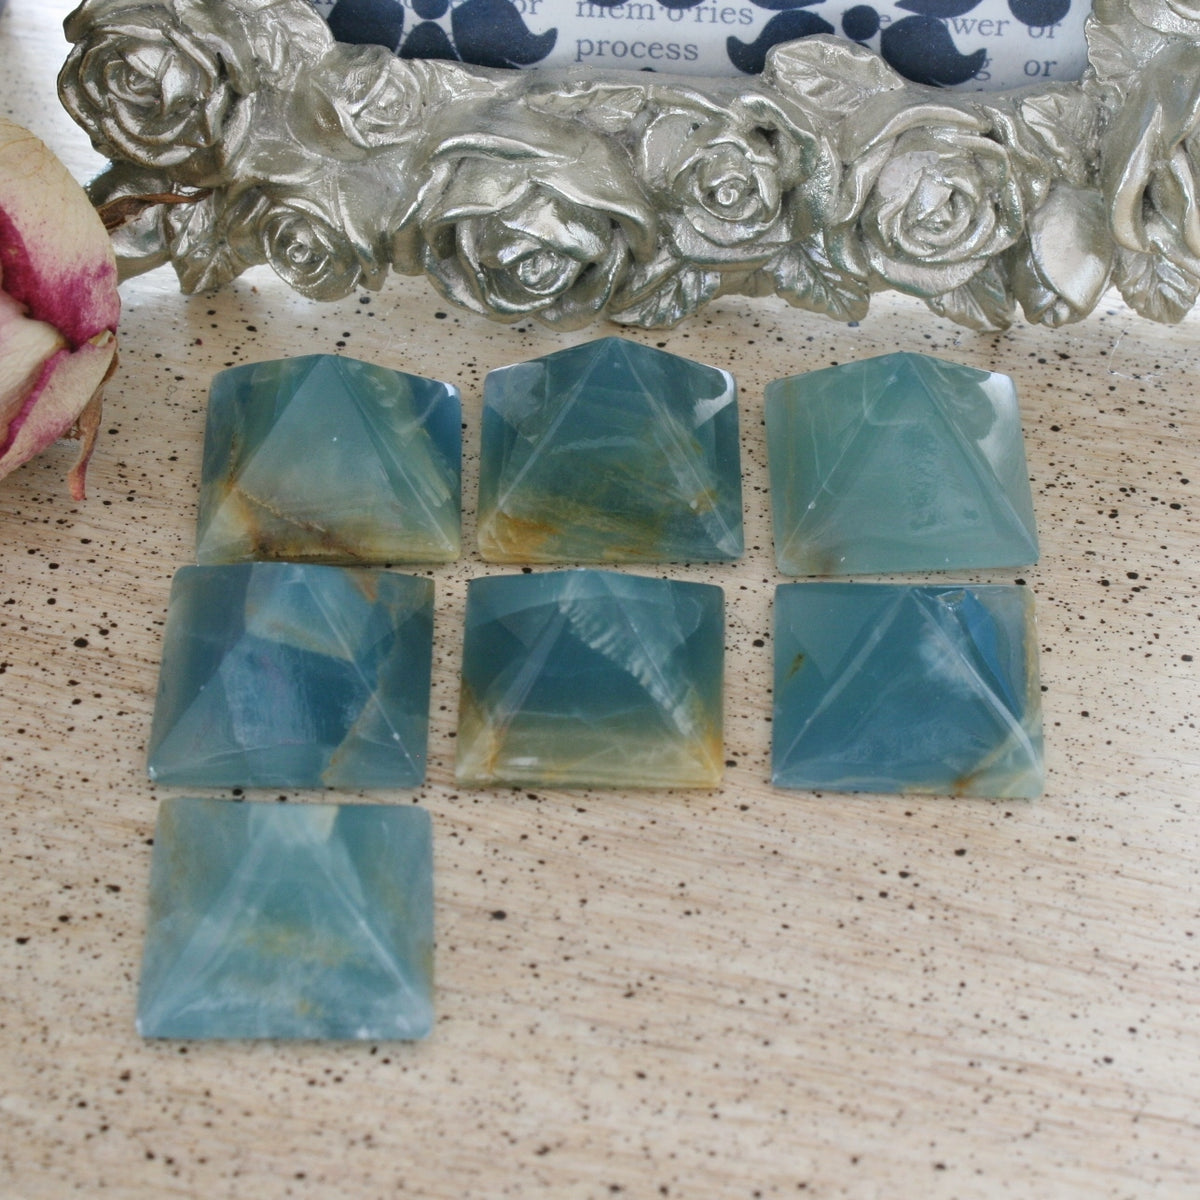 Blue Calcite / Blue Onyx Pyramid from Argentina, also called Lemurian Aquatine Calcite, LGPY3